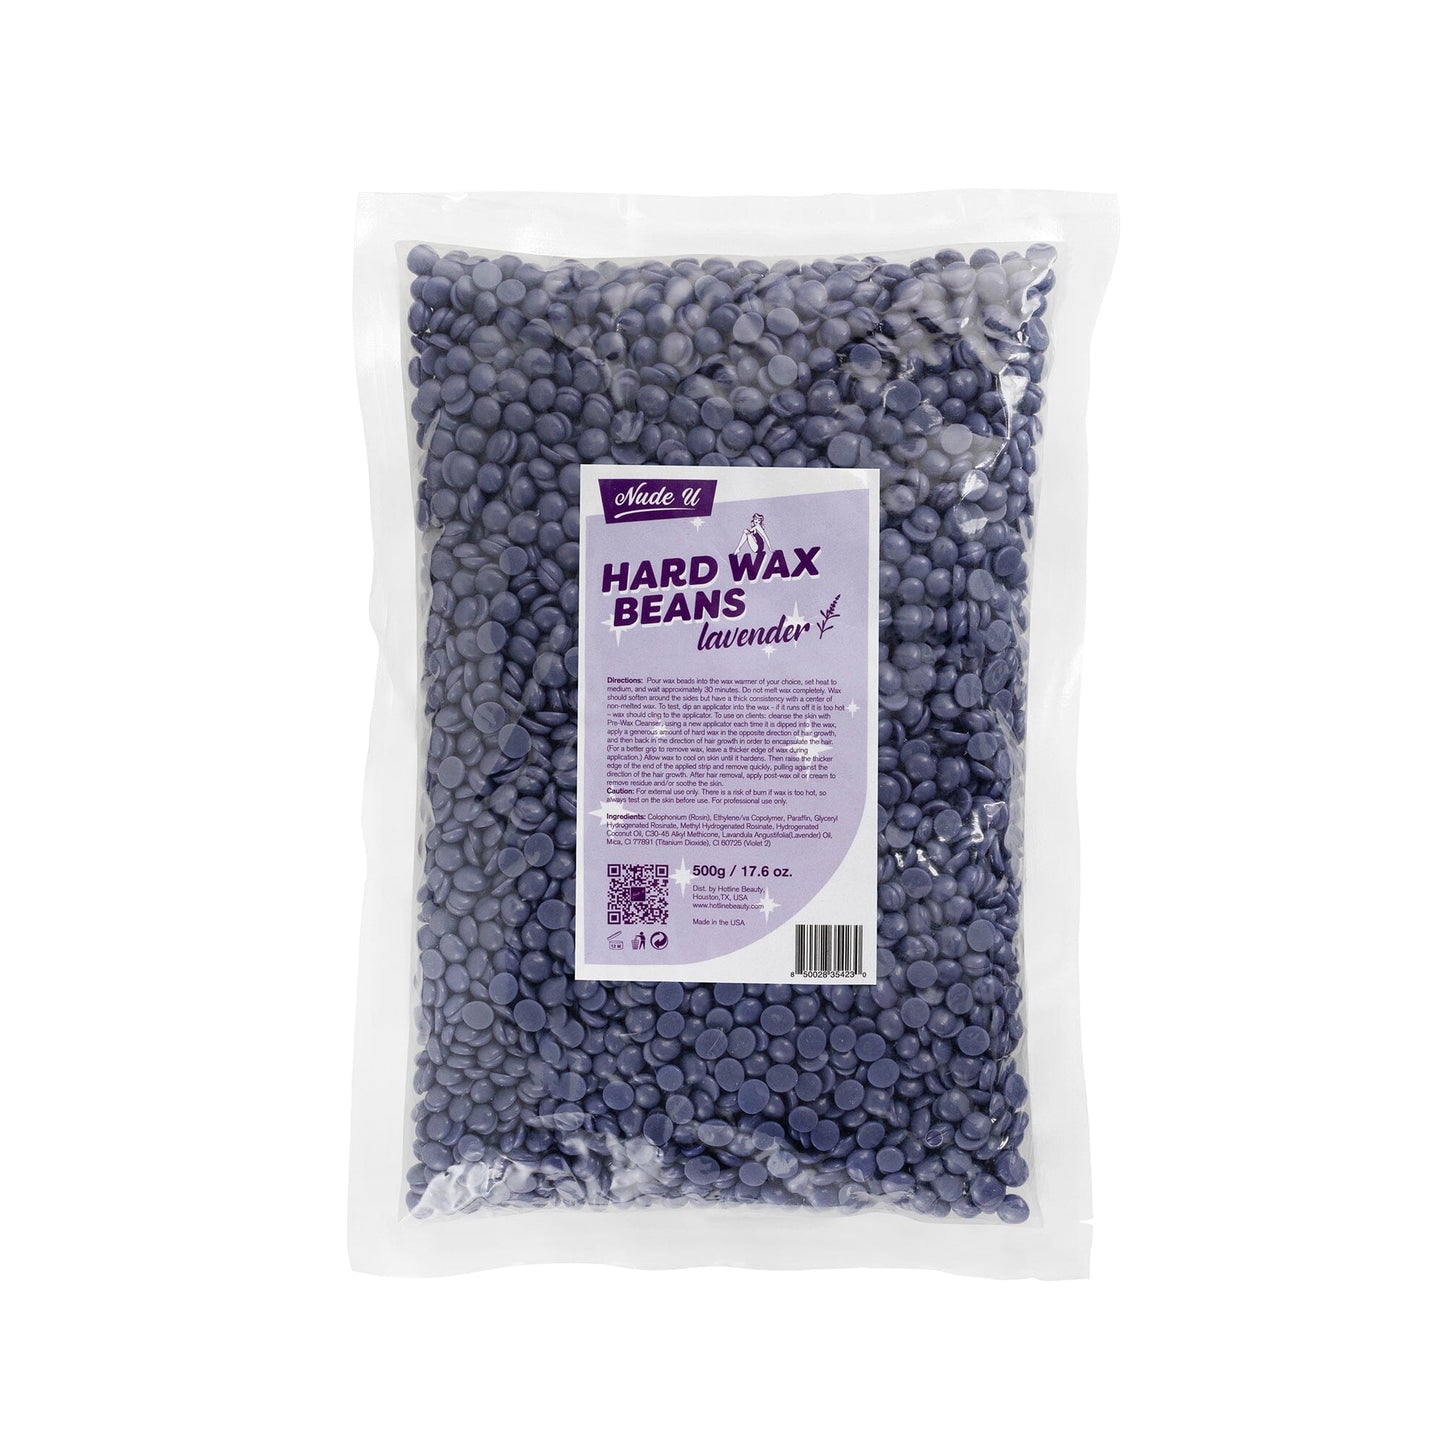 Hard Wax Beans | Lavender | NUDE U Waxing Kits & Supplies NUDE U 17.6oz / 500g 